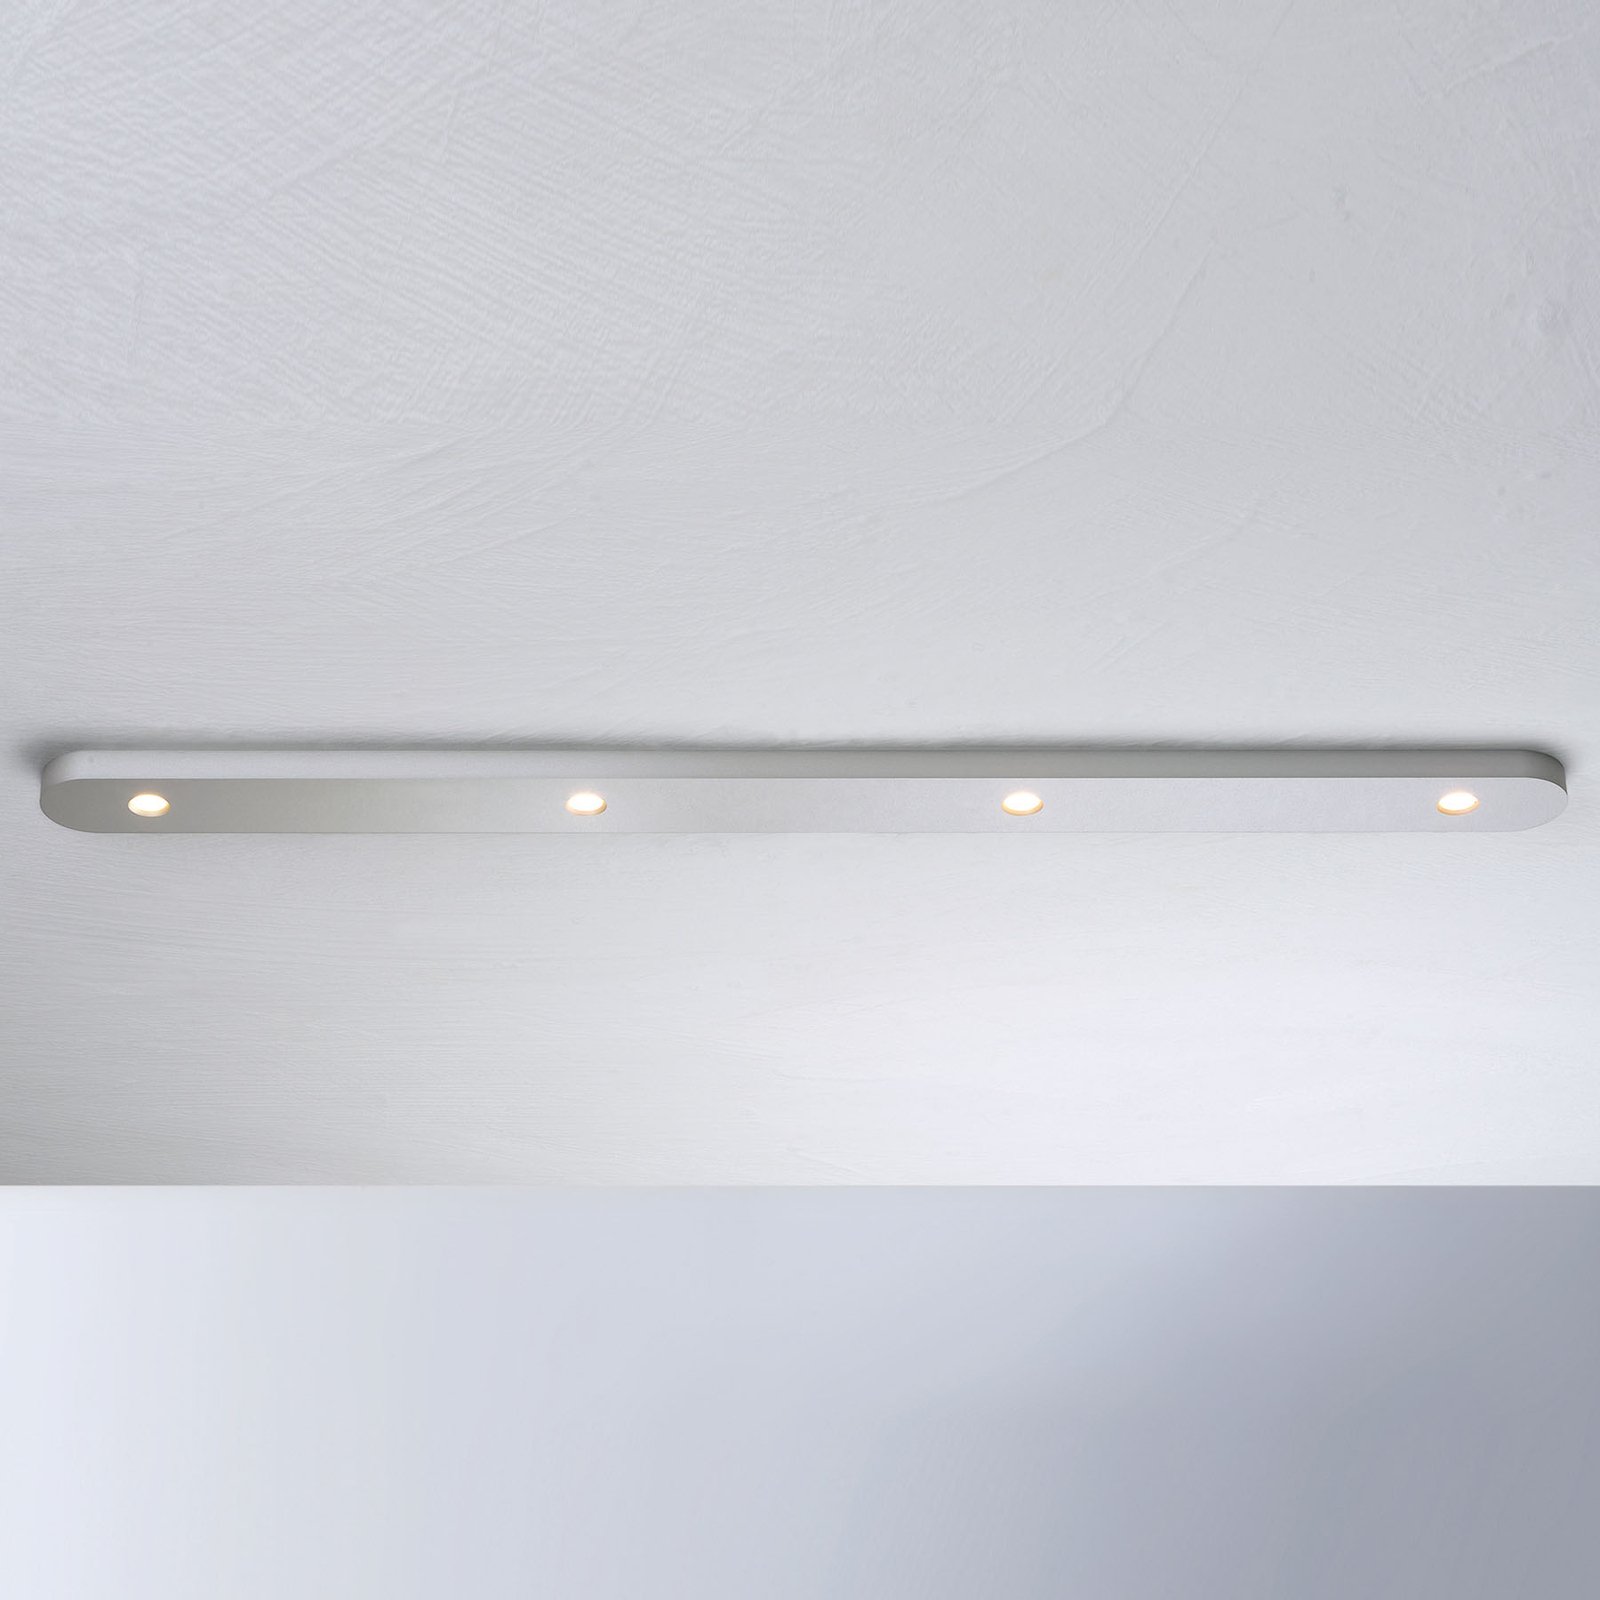 Bopp Close plafoniera LED 4 luci, alluminio